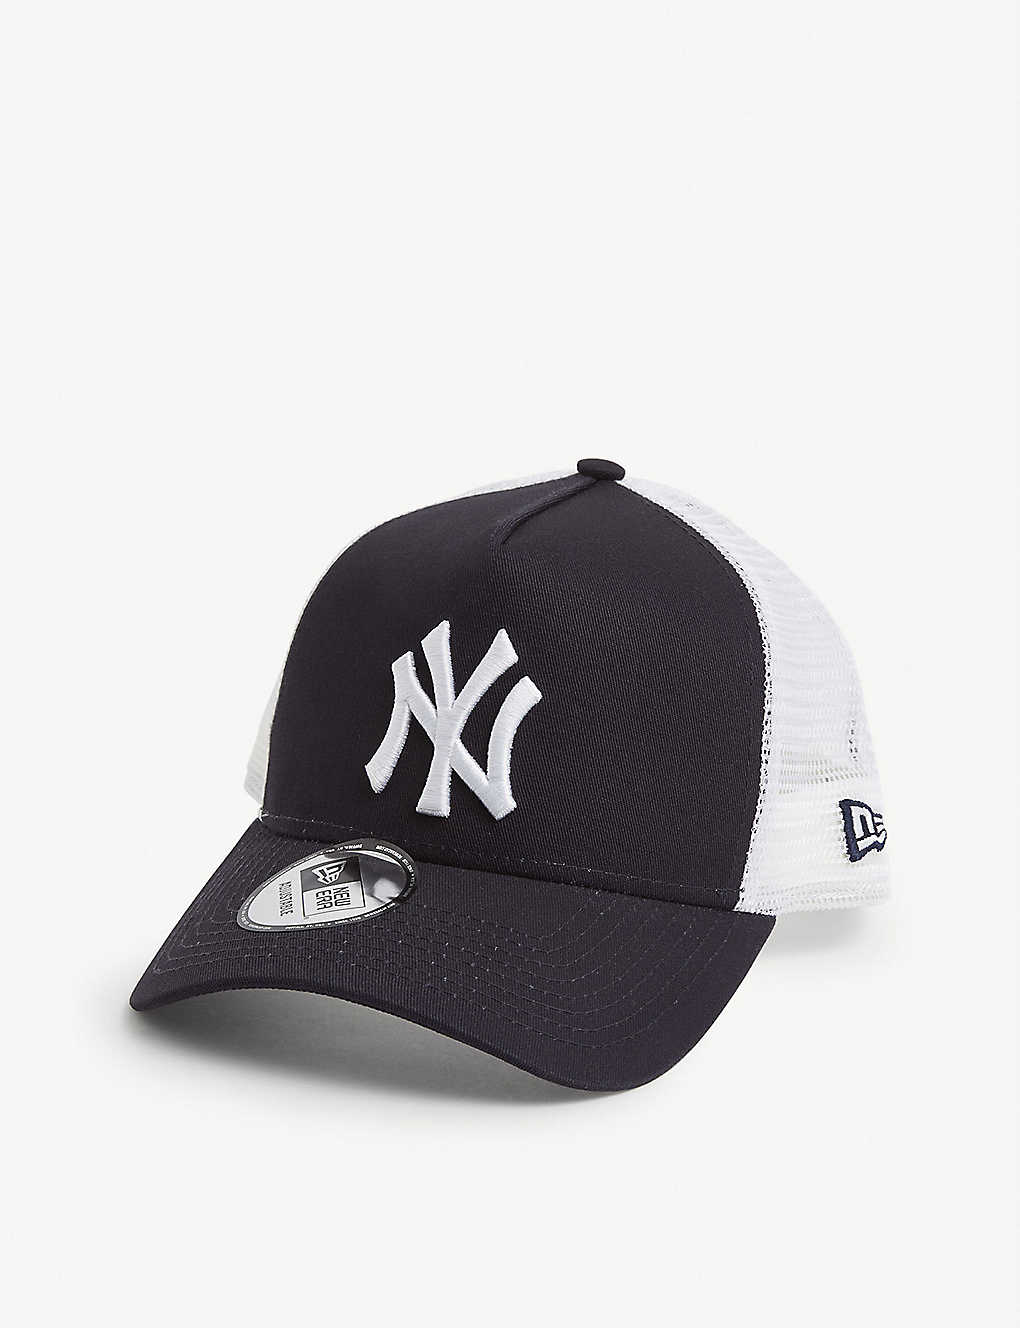 New Era New York Yankees Cotton And Mesh Trucker Cap In Black White